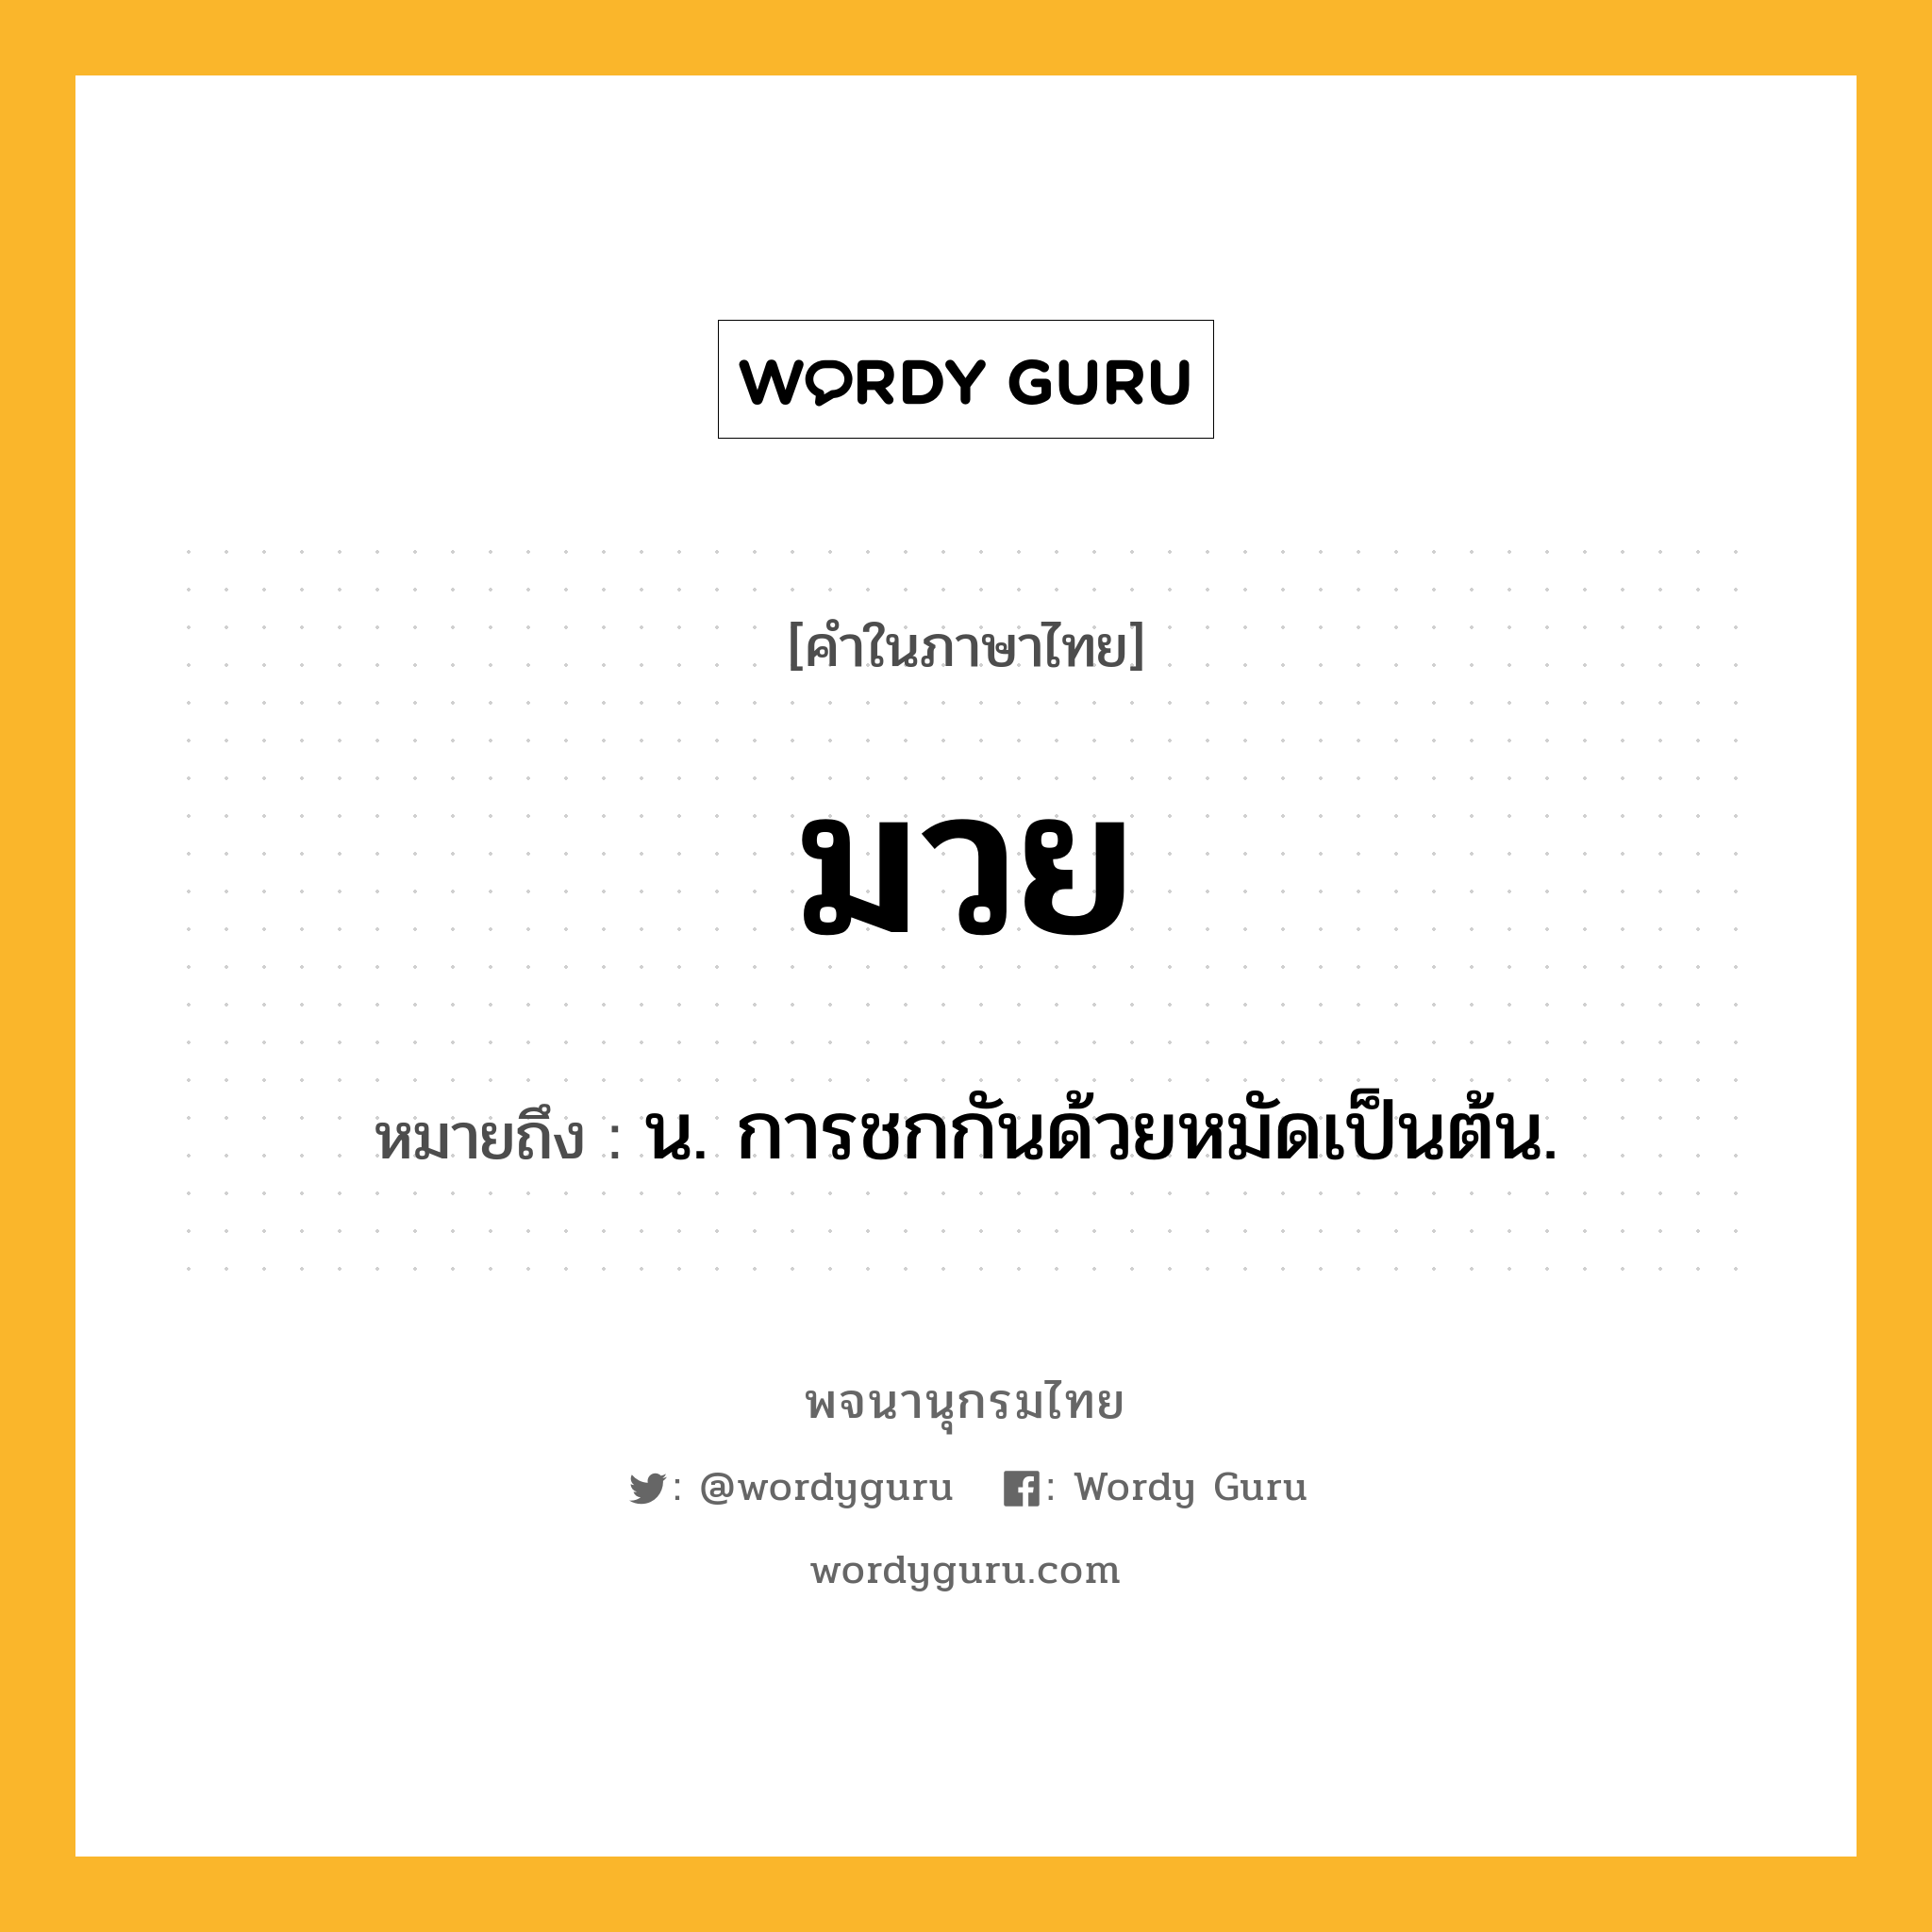 มวย ความหมาย หมายถึงอะไร?, คำในภาษาไทย มวย หมายถึง น. การชกกันด้วยหมัดเป็นต้น.